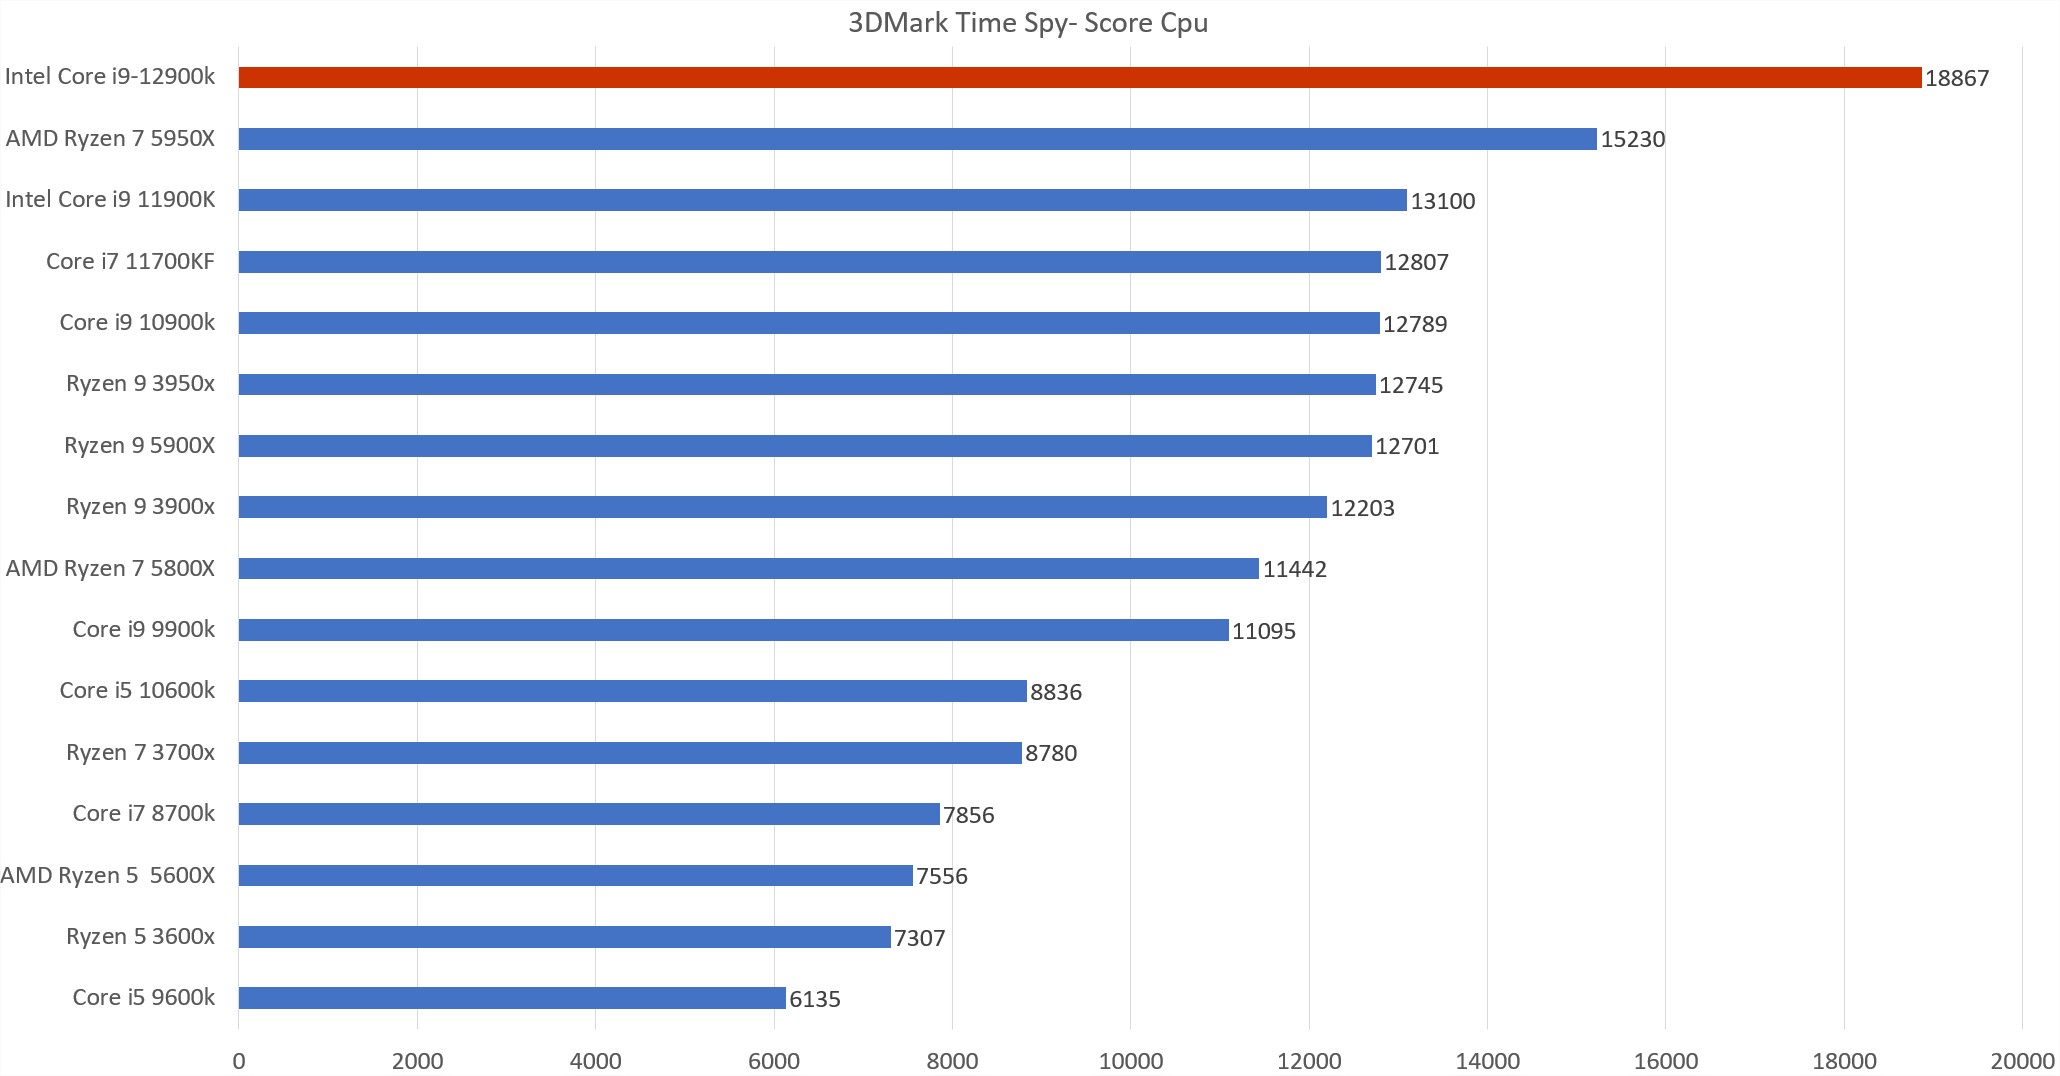 Résultats Intel Core i9 12900k sous le logiciel 3d mark timpe spy